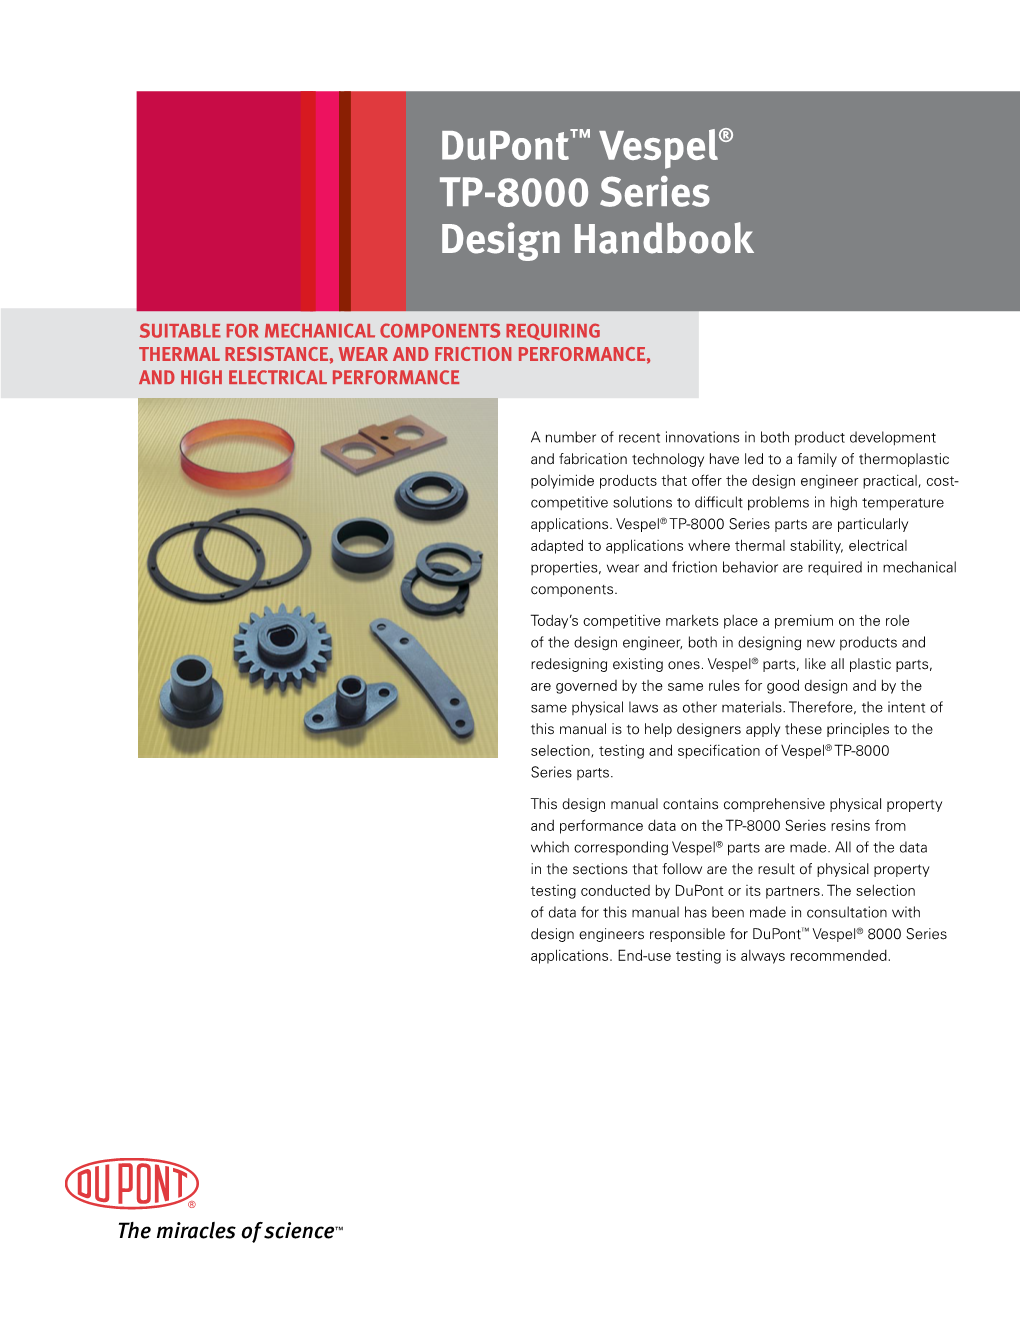 Dupont™ Vespel® TP-8000 Series Design Handbook